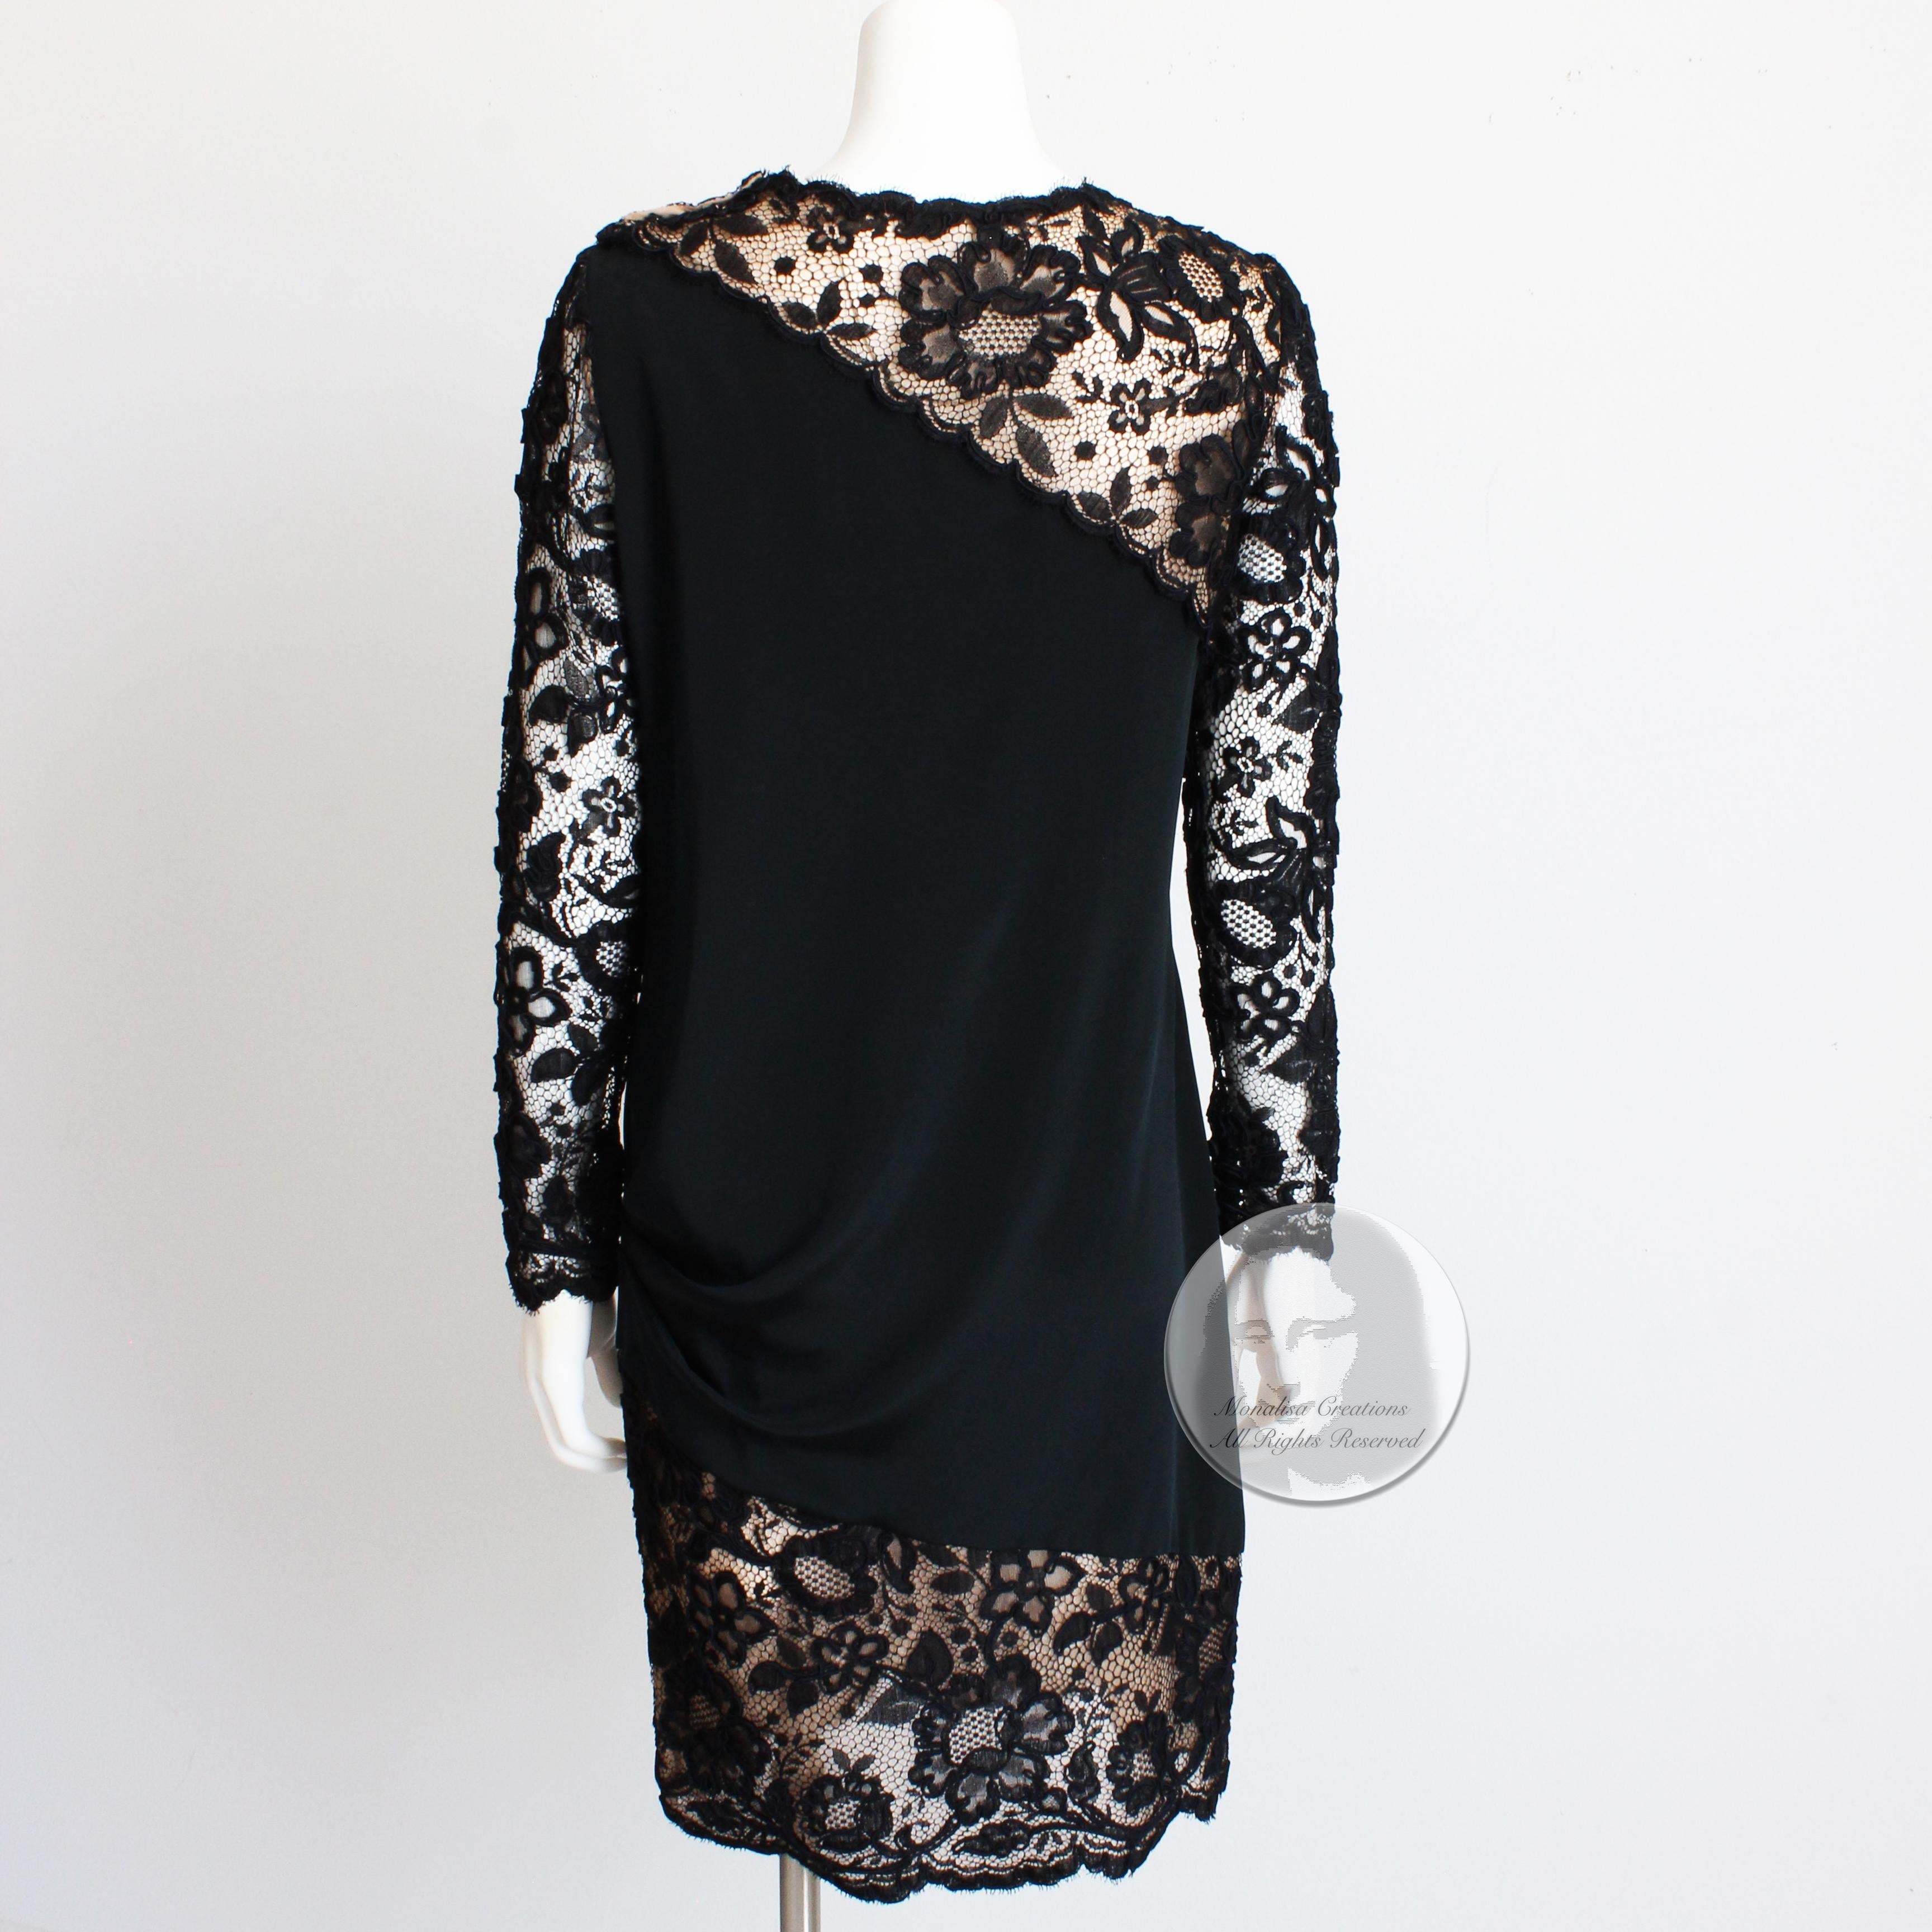 Bill Blass Cocktail Dress Black Illusion Lace Formal 70s Little Black Dress  1